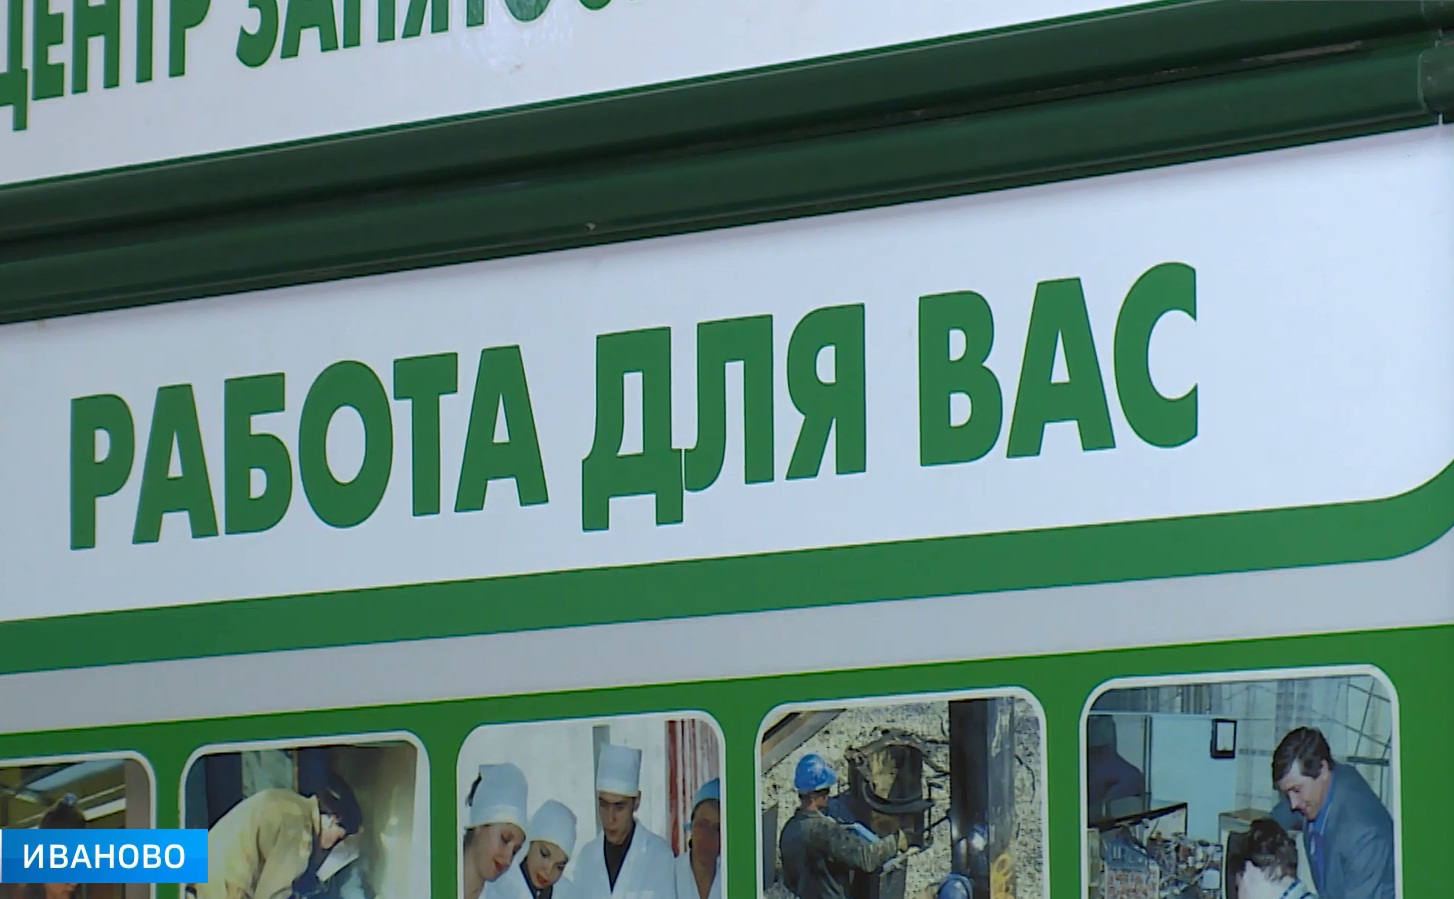 Начали год с поиска новой работы в Ивановской области около 6 000 человек